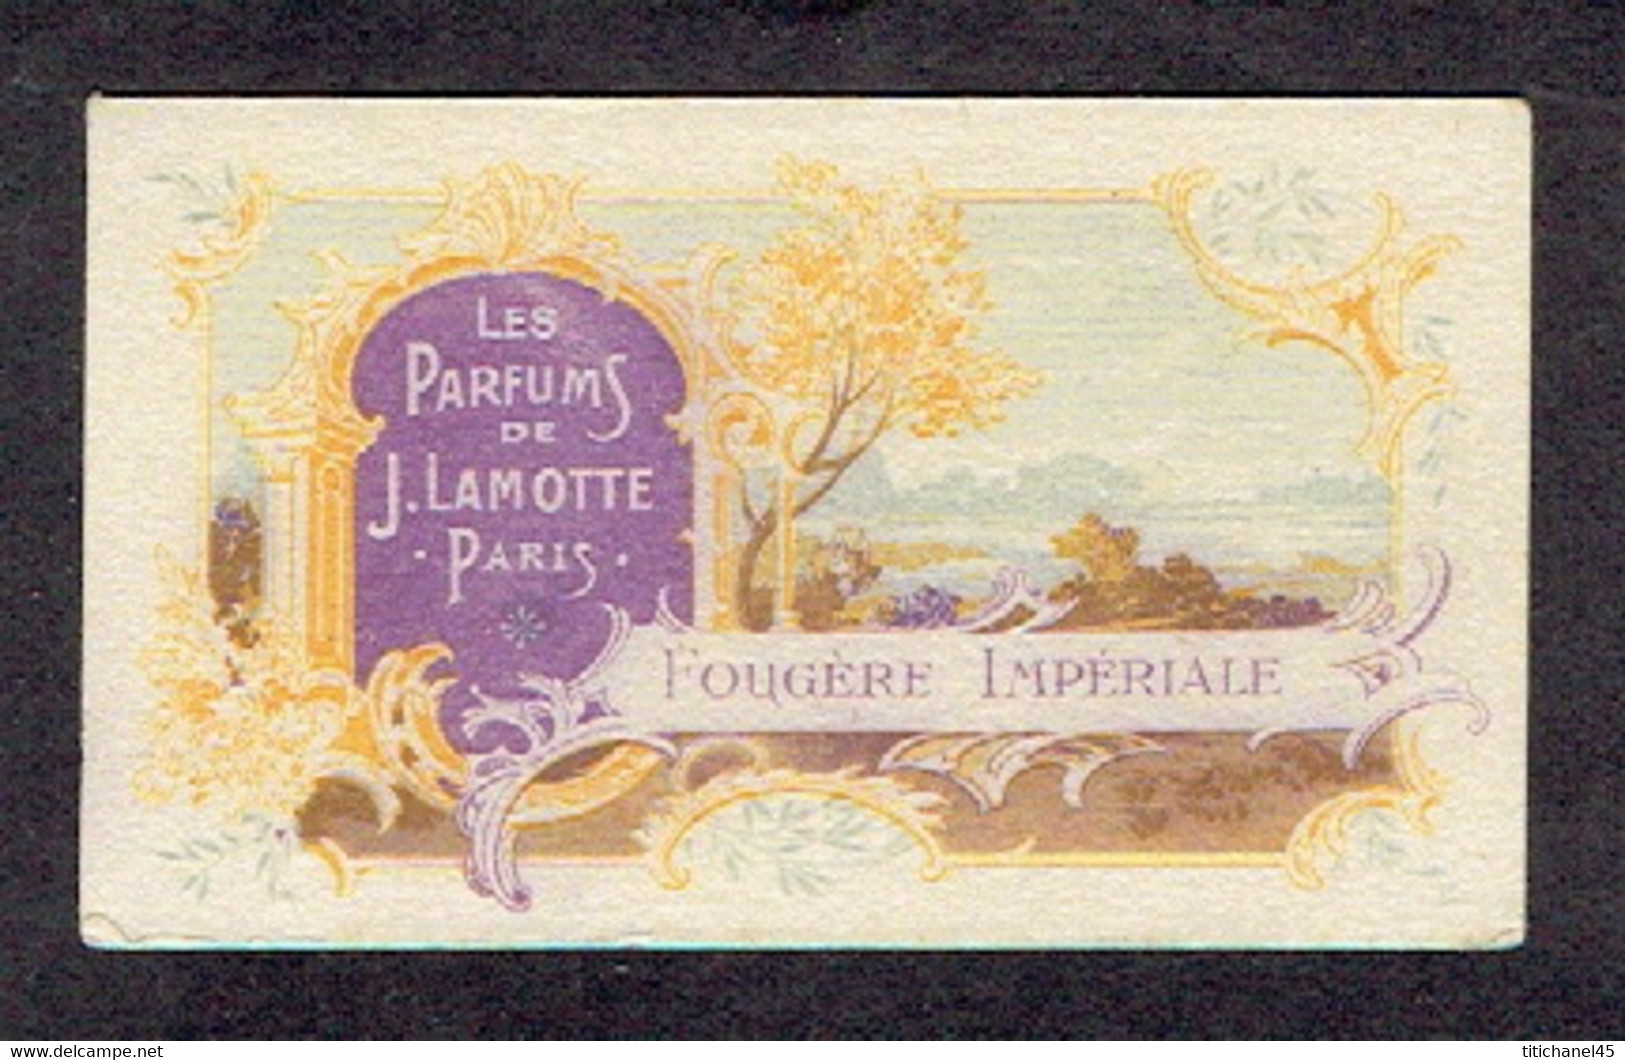 Très Rare Carte Parfum FOUGERE IMPERIALE De J. LAMOTTE - Calendrier De 1918 Au Verso - Anciennes (jusque 1960)